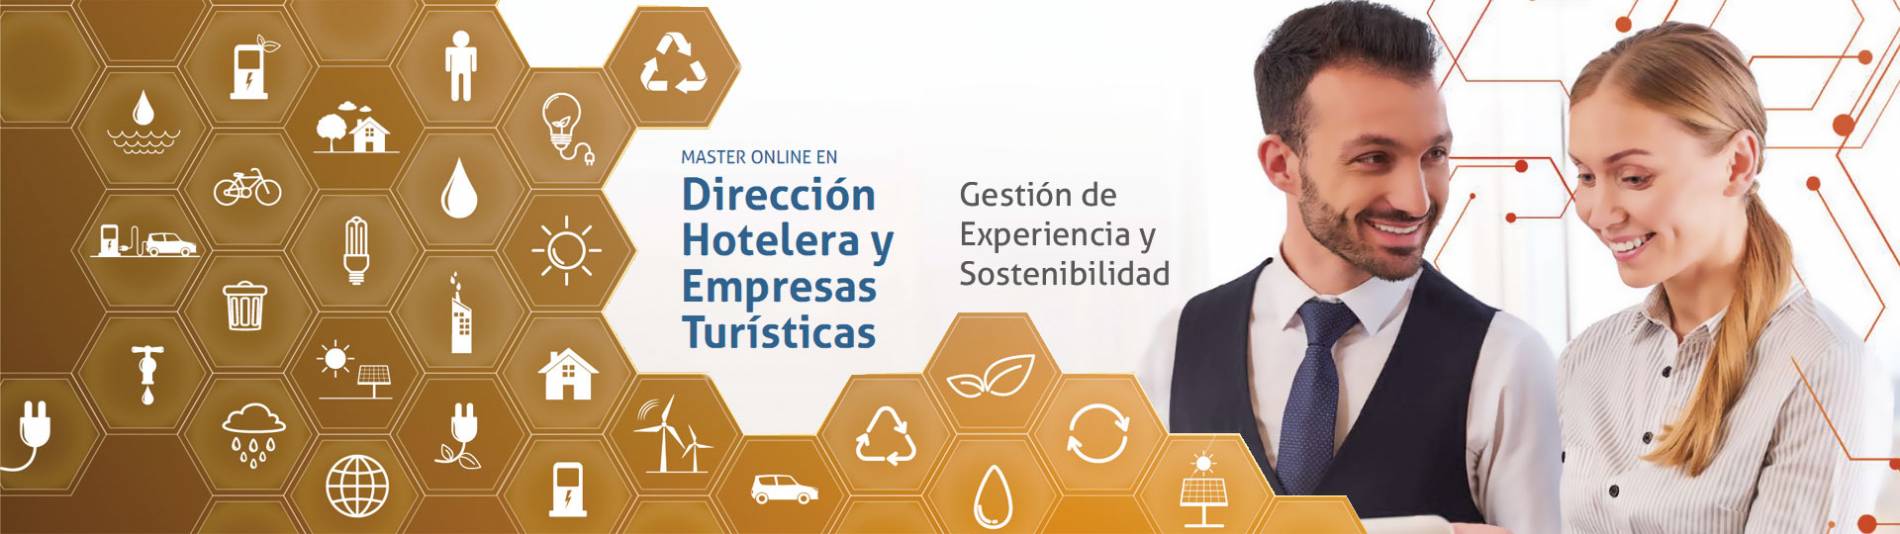 Master Online en Dirección Hotelera y Empresas Turísticas